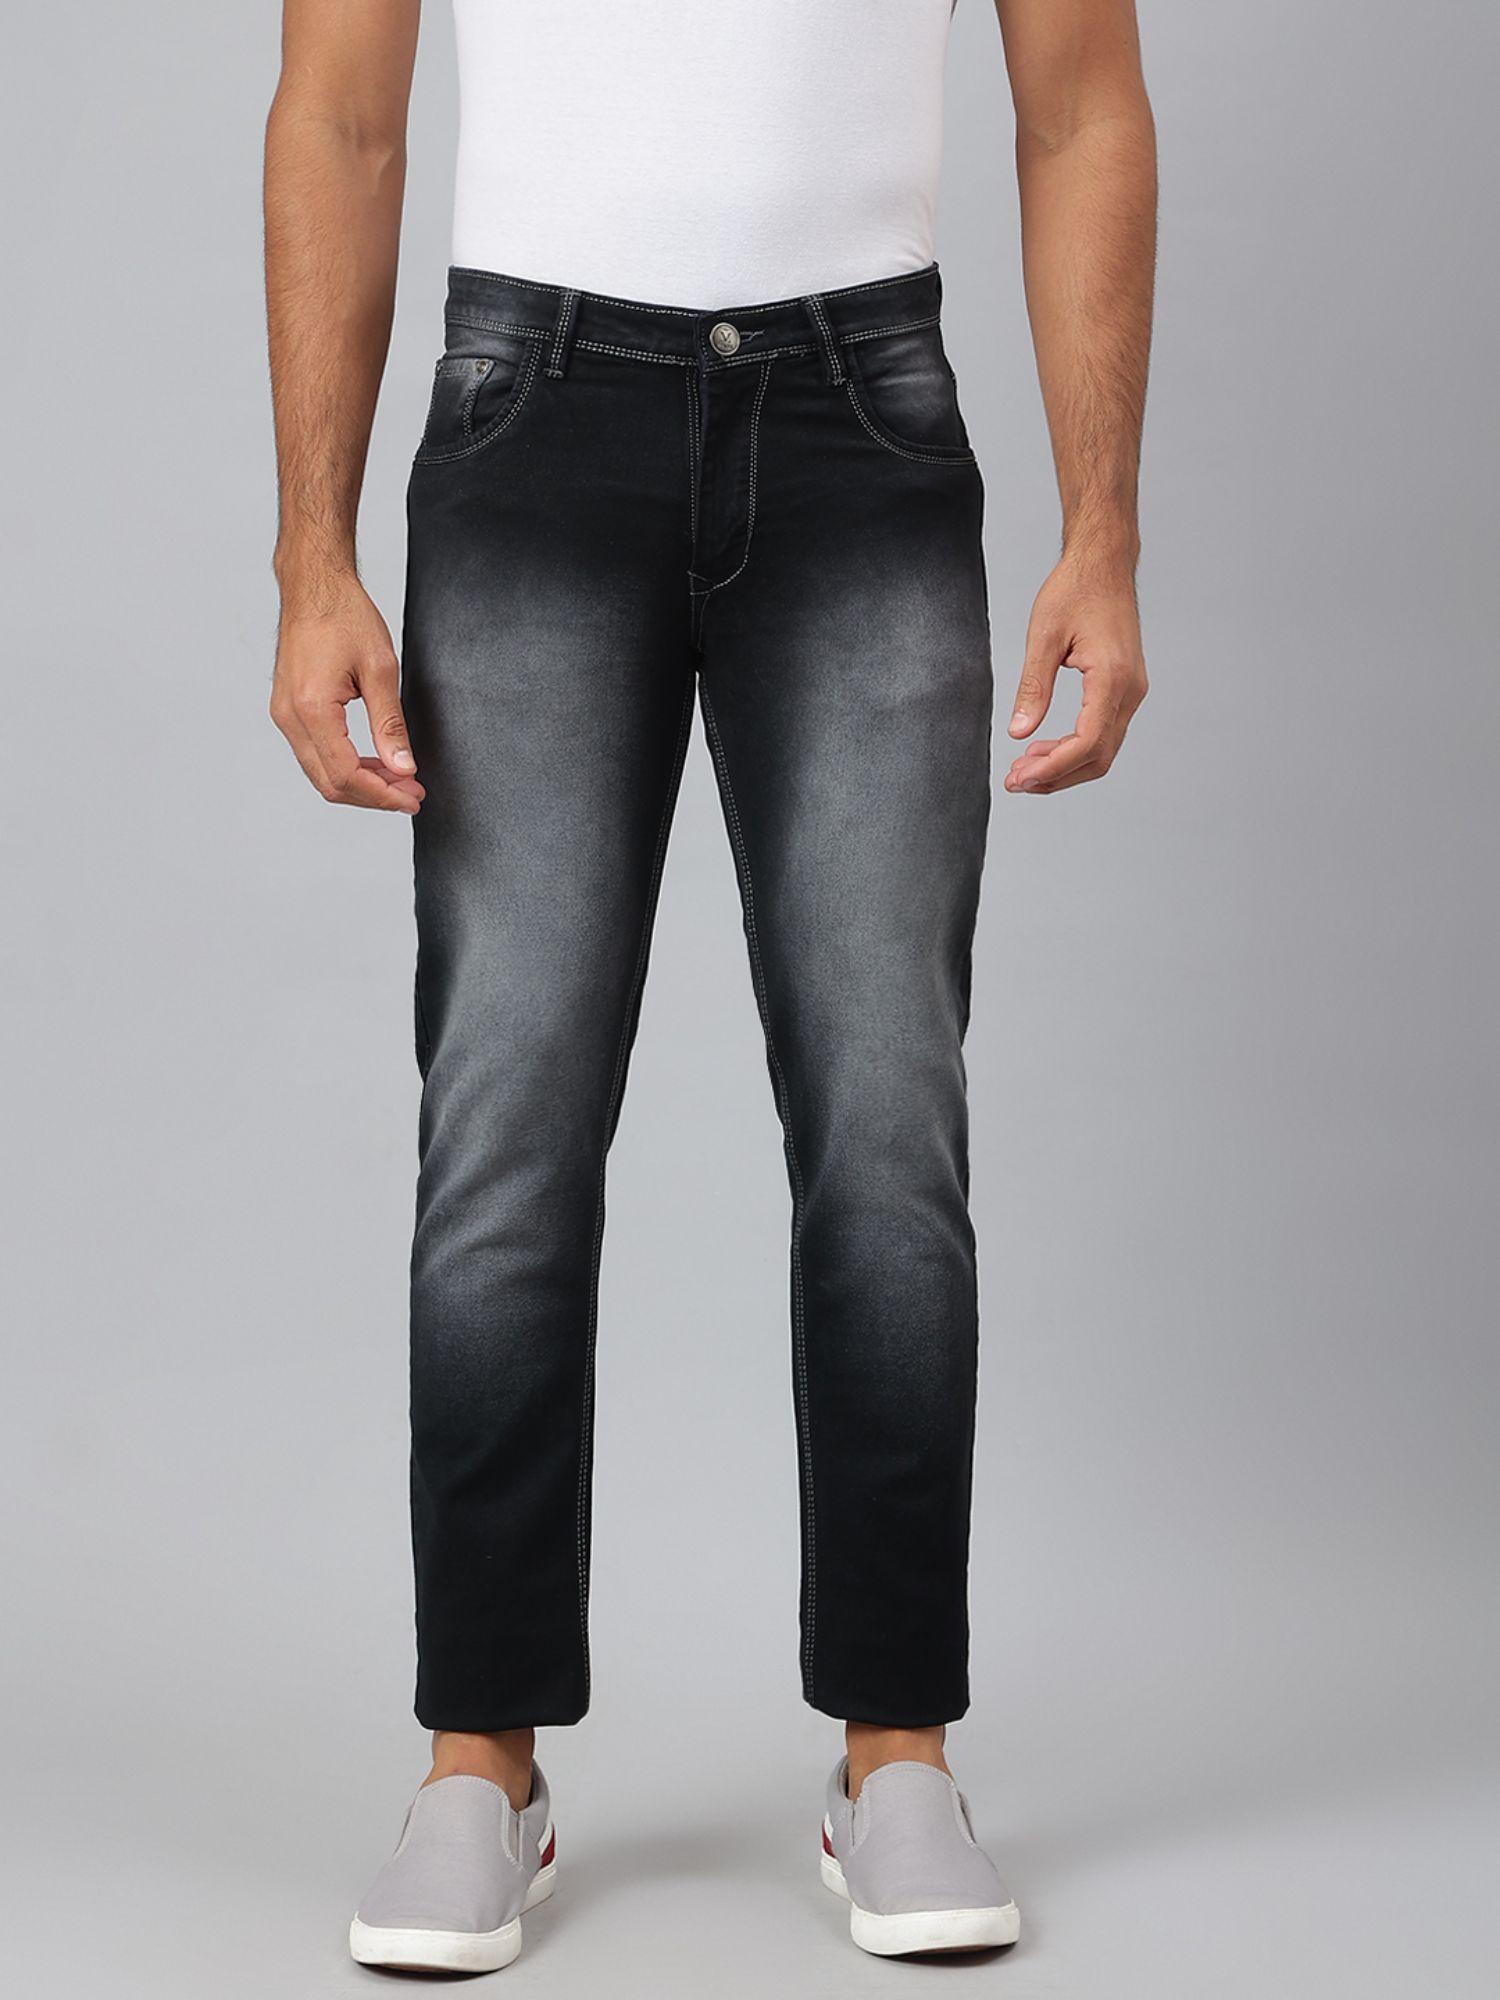 black cotton solid jeans